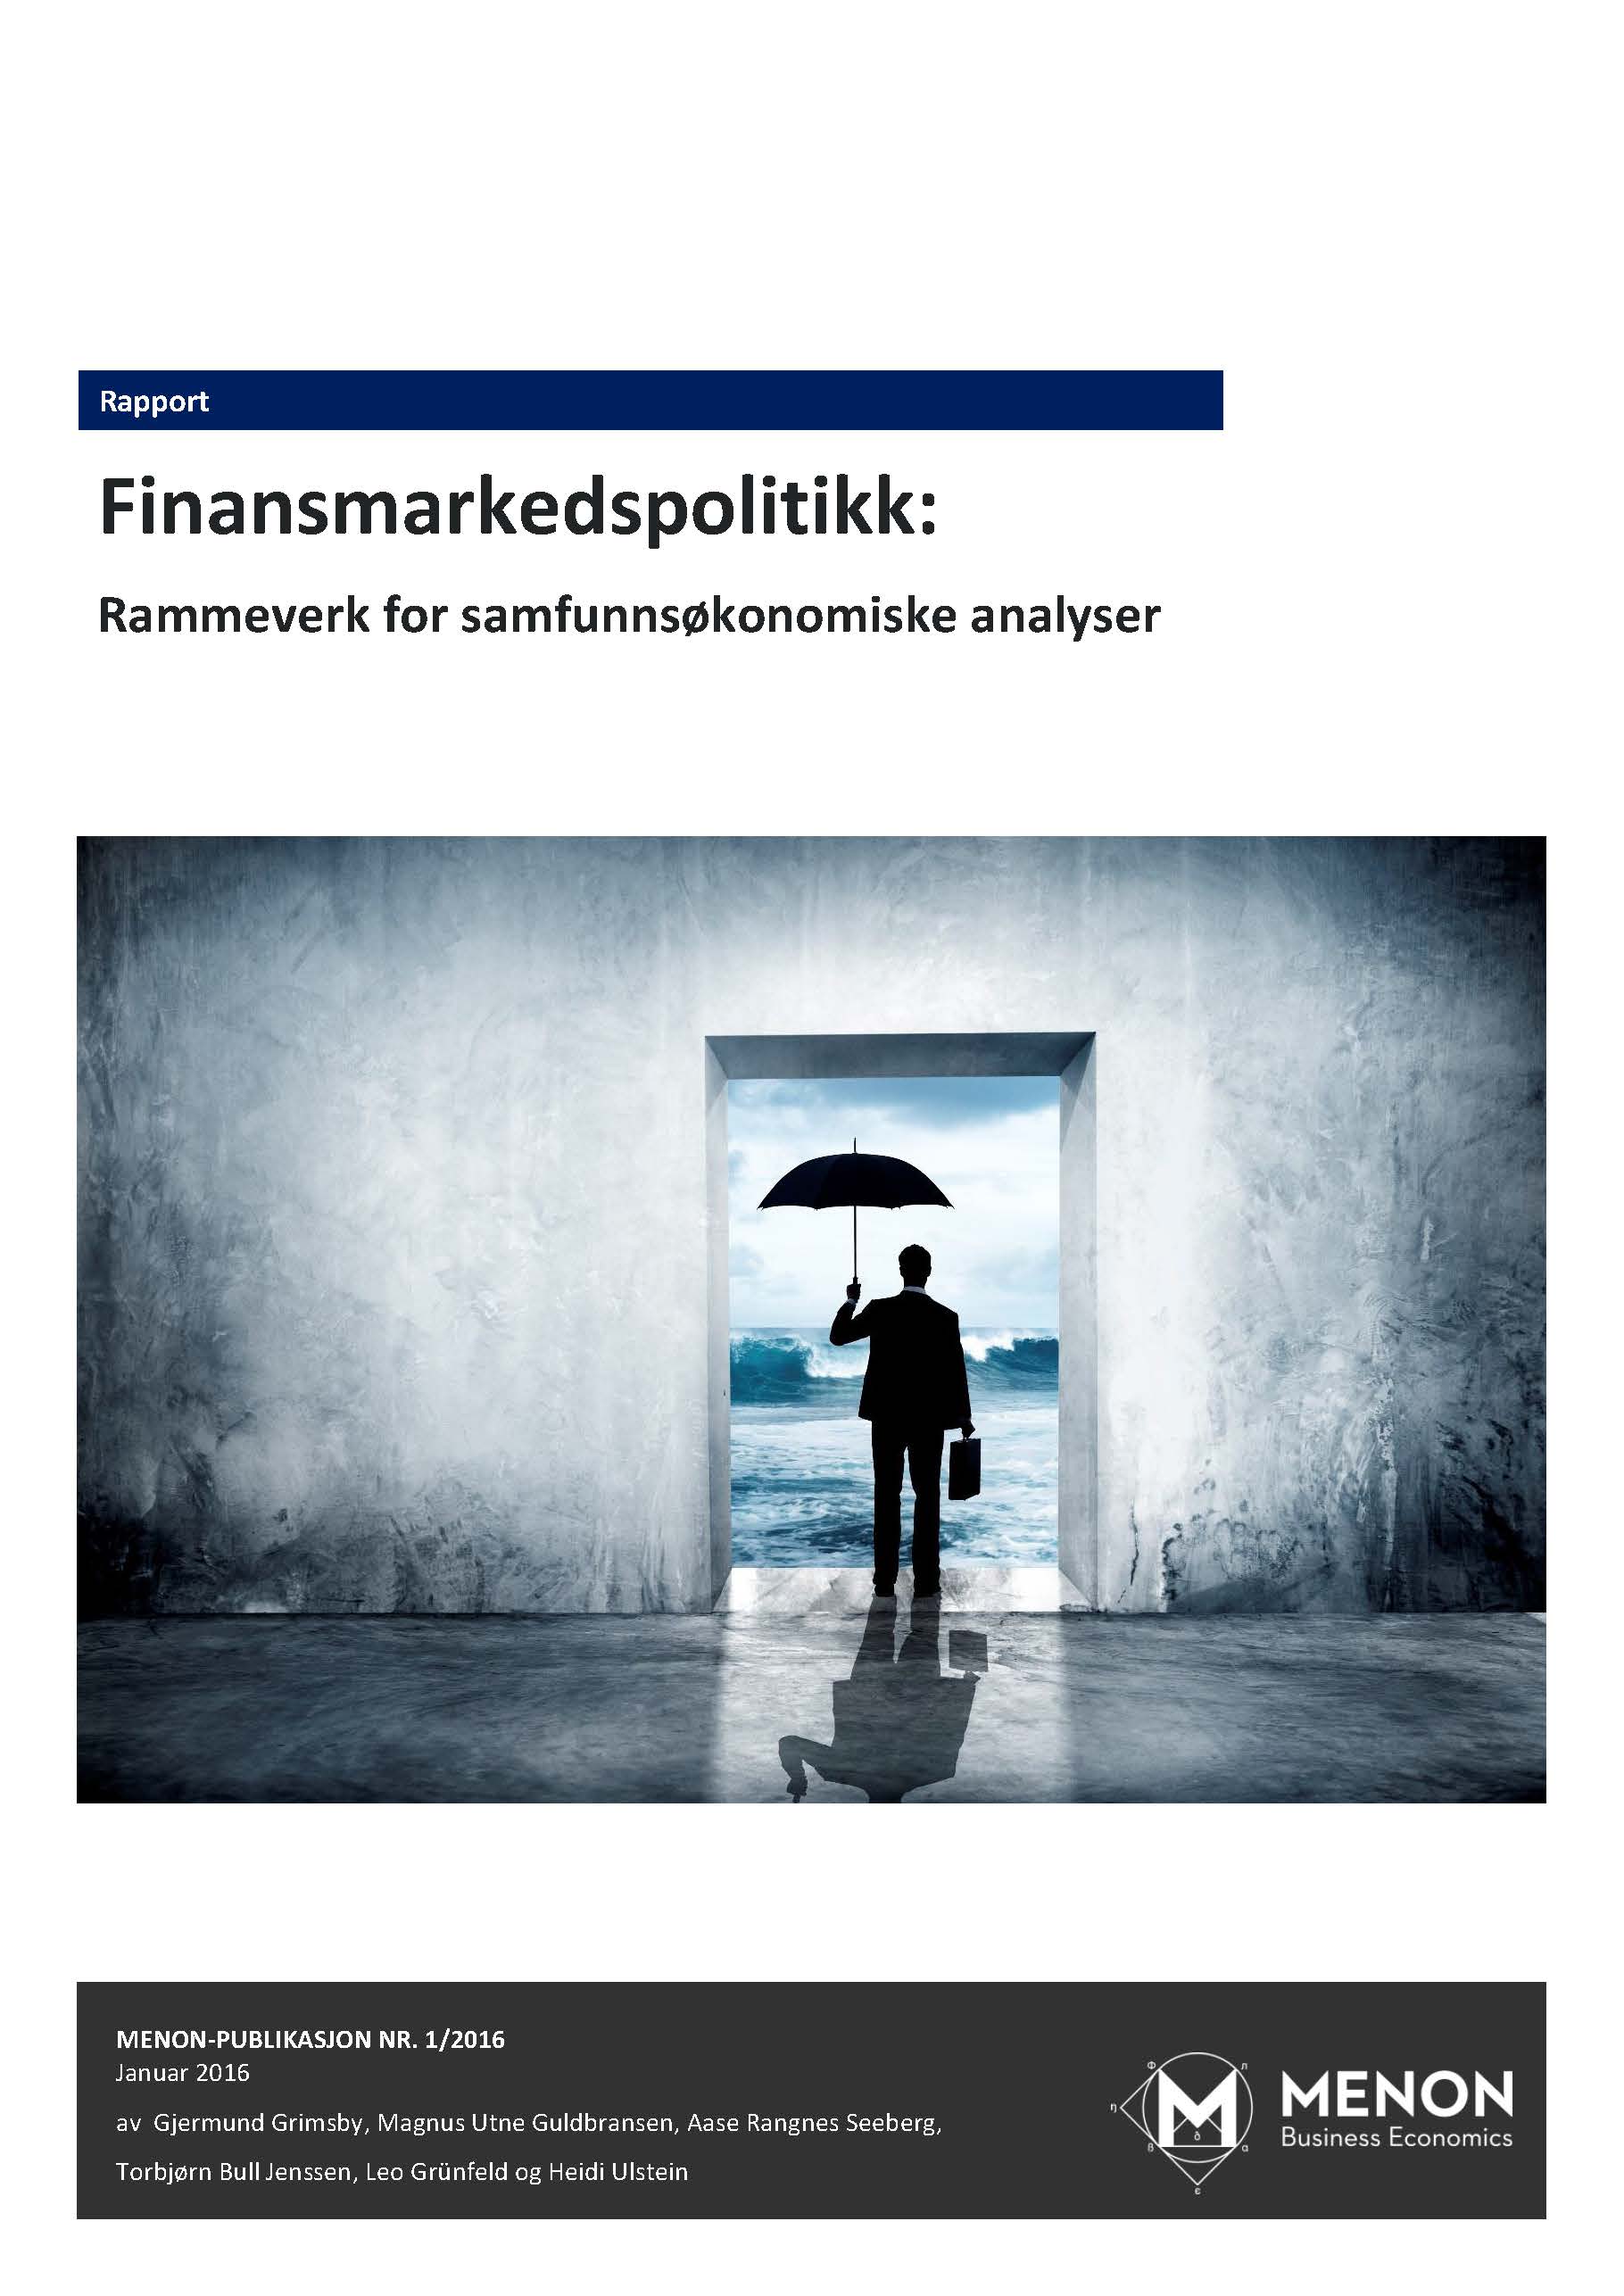 Finansmarkedspolitisk rammeverk for samfunnsøkonomiske analyser